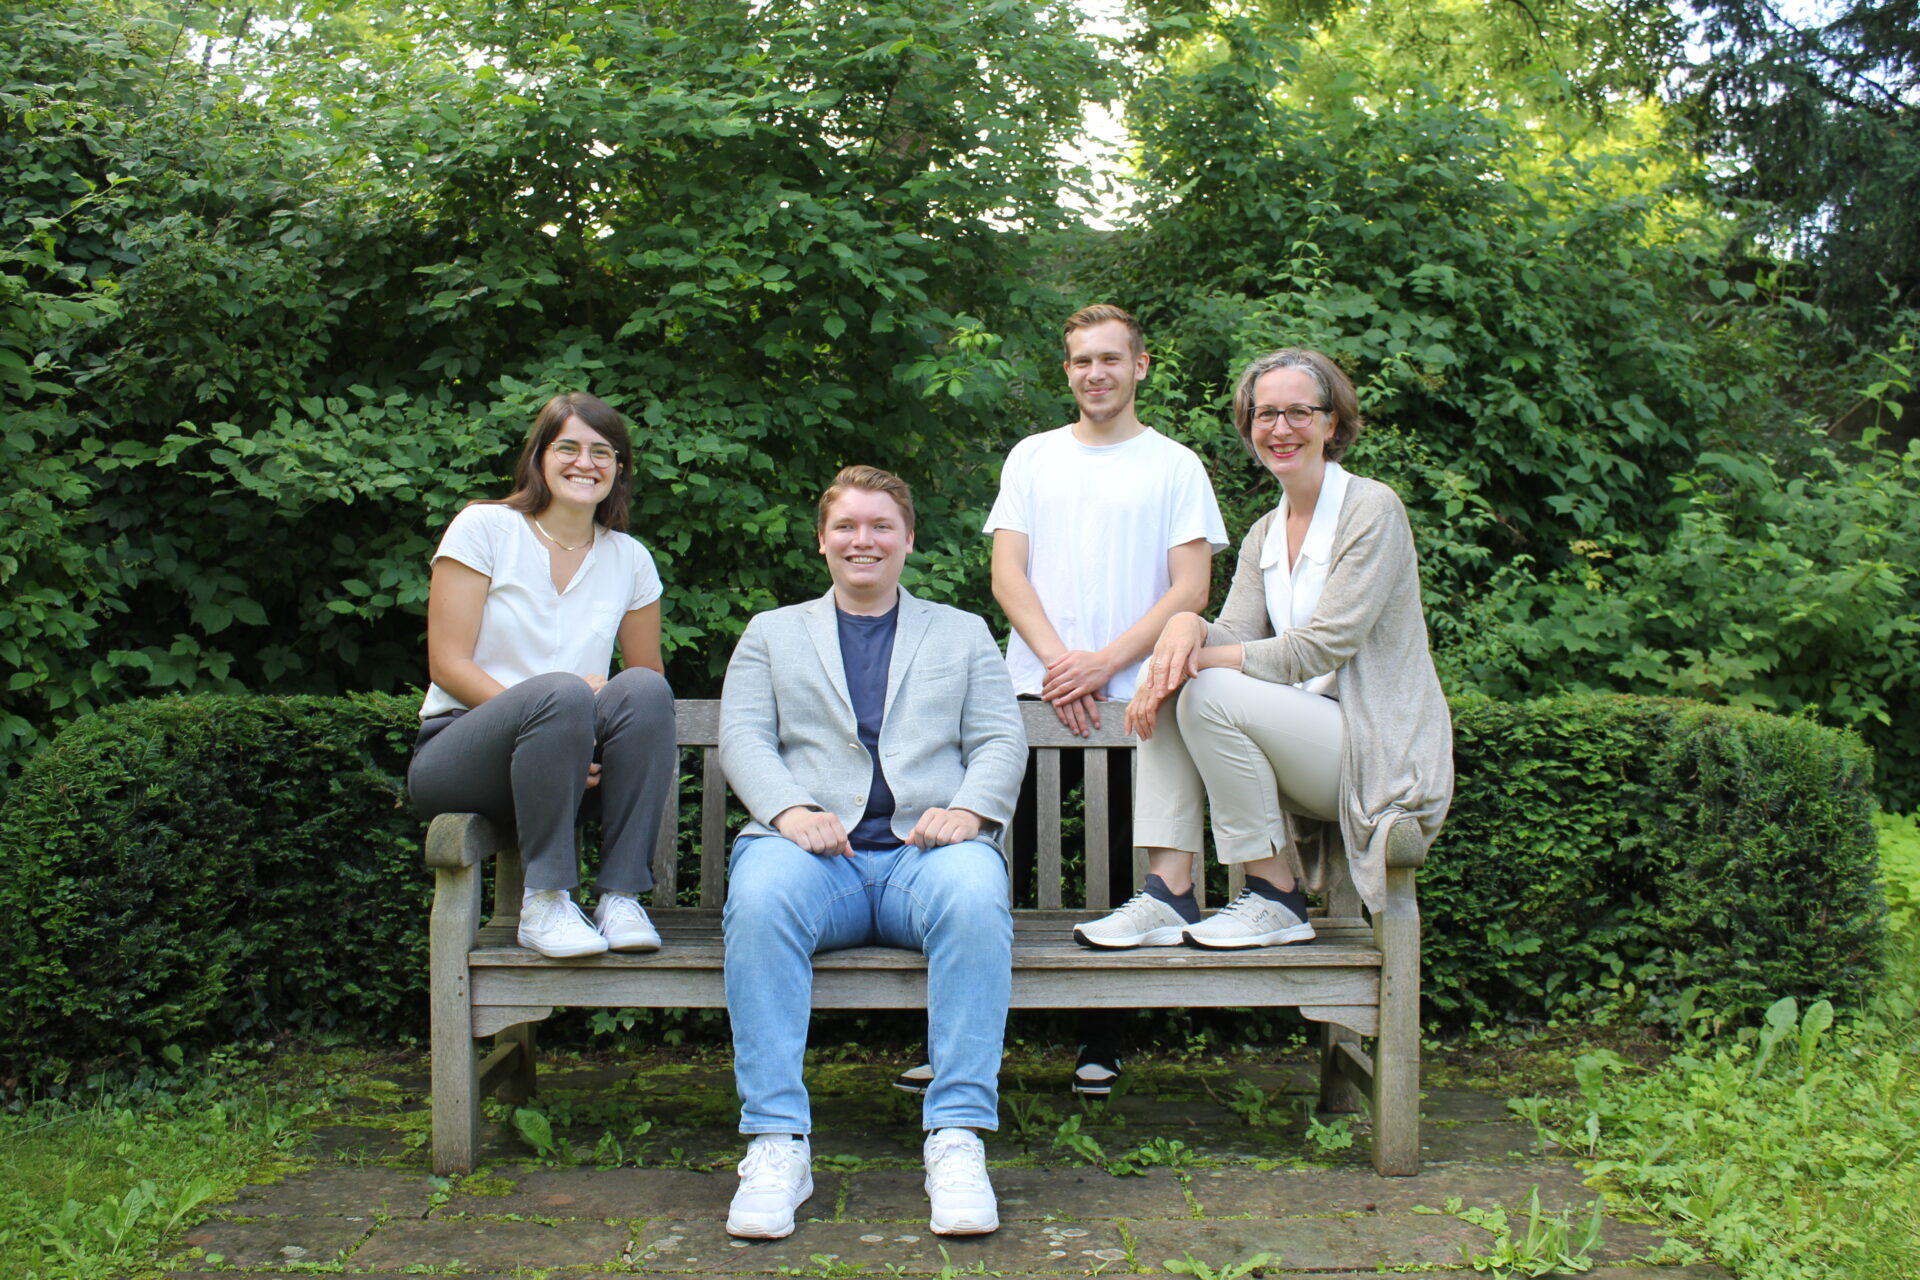 Auf dem Bild sind vier Menschen zu sehen die auf und an einer Bank sitzen und stehen. Es sind zwei Frauen und zwei Männer.